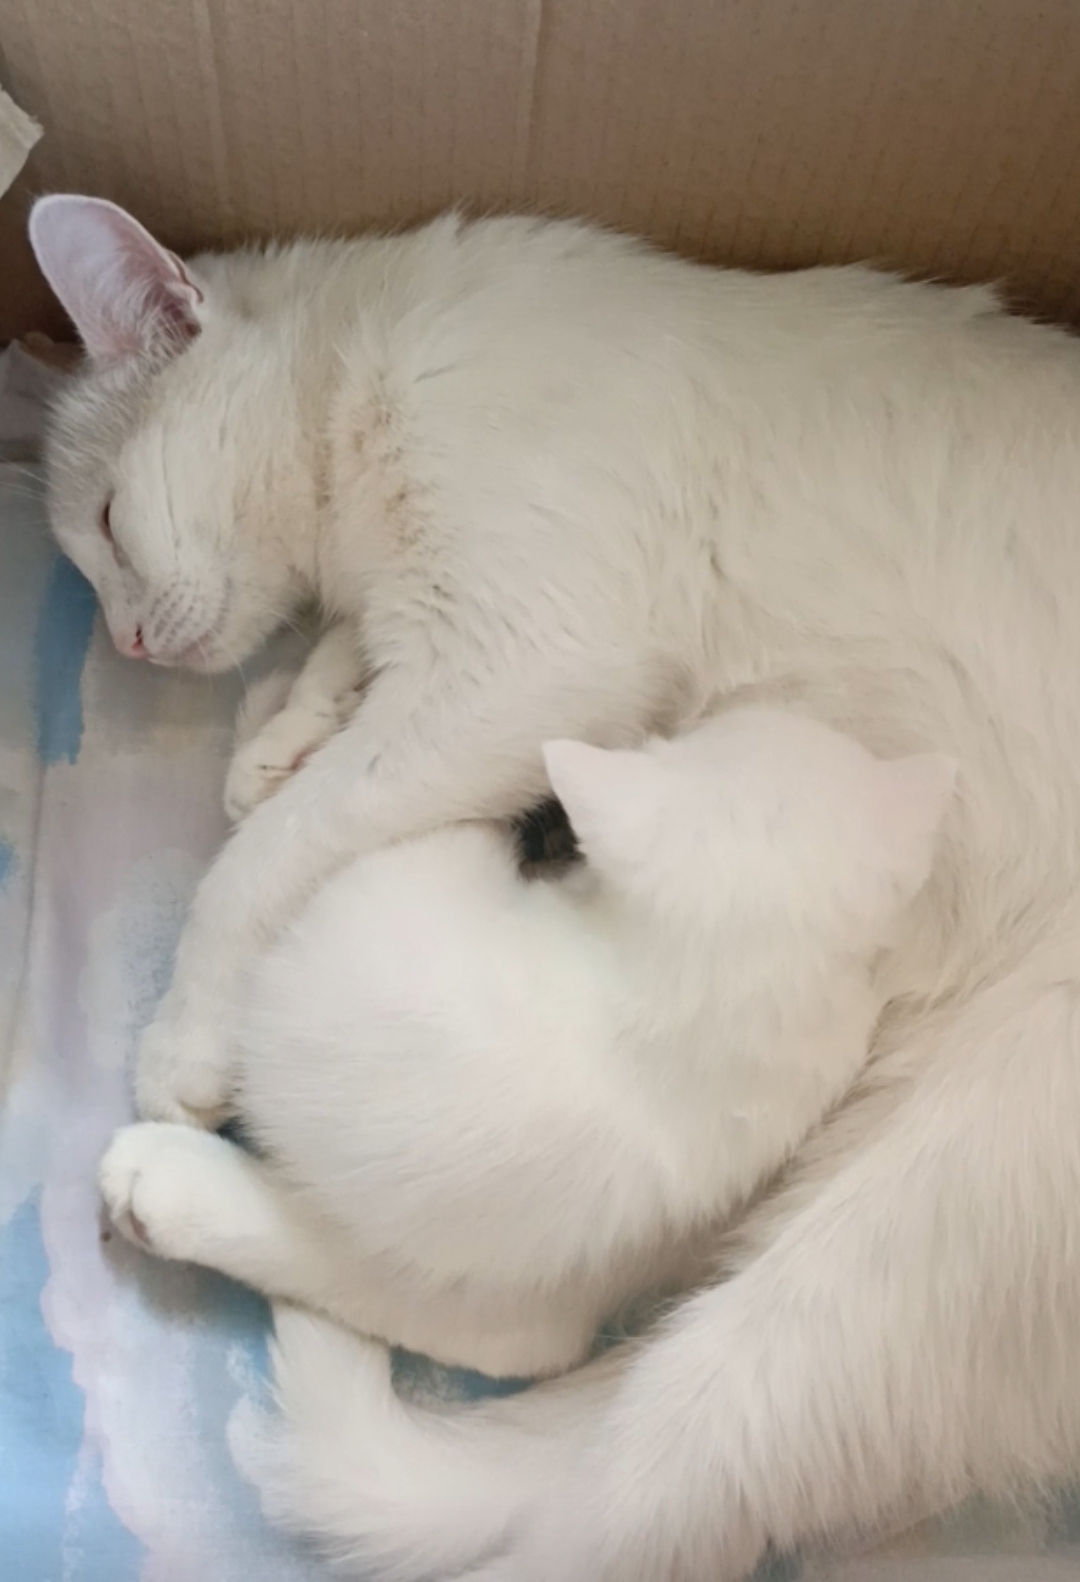 У белой кошки , беленький котёнок,
Он очень мал, едва открыл глаза,